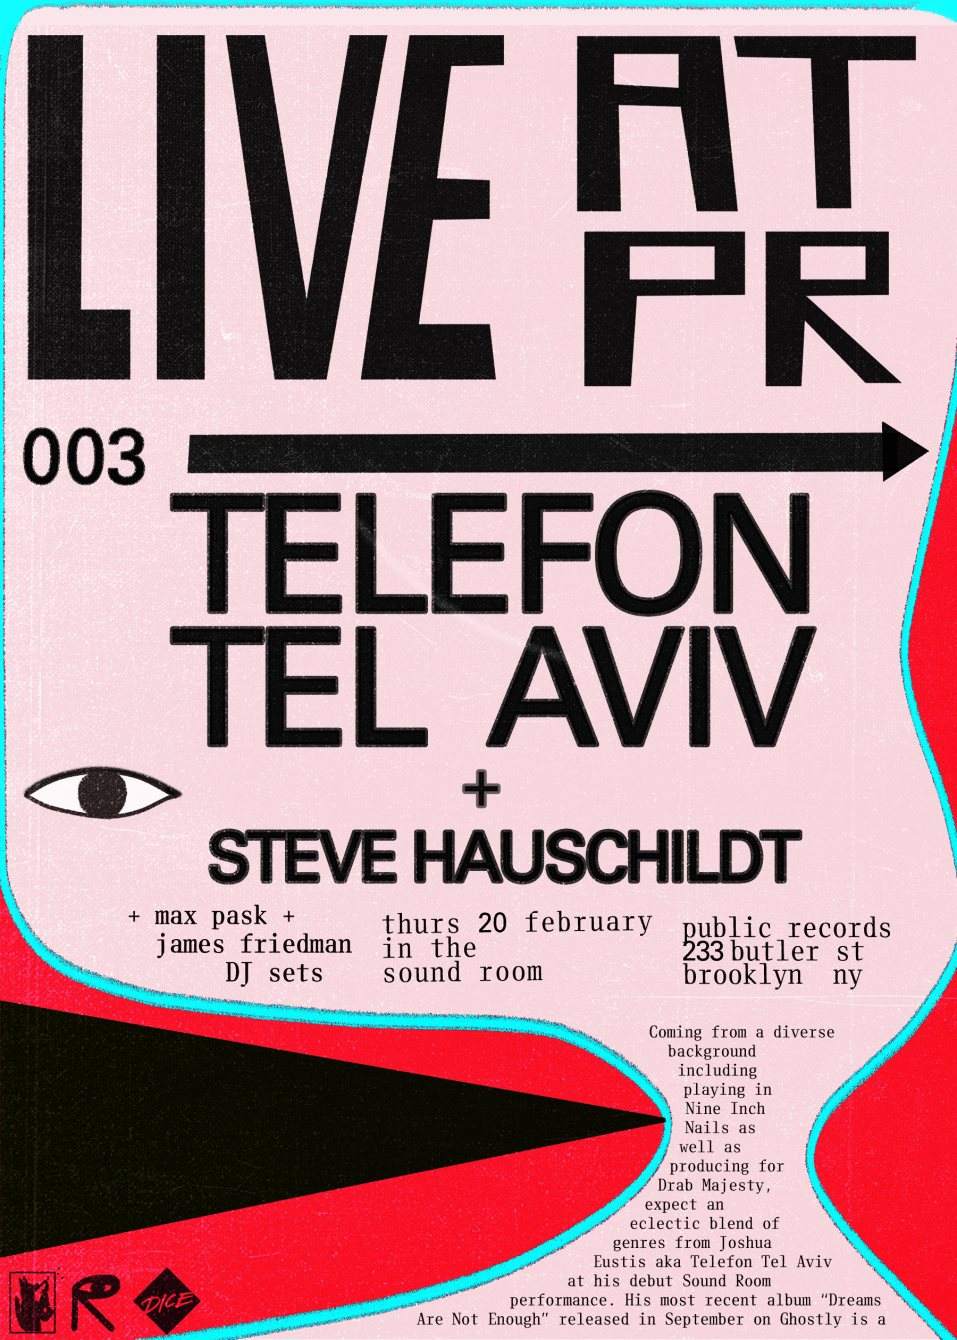 Telefon Tel Aviv, Steve Hauschildt, James Friedman & Max Pask - Página frontal